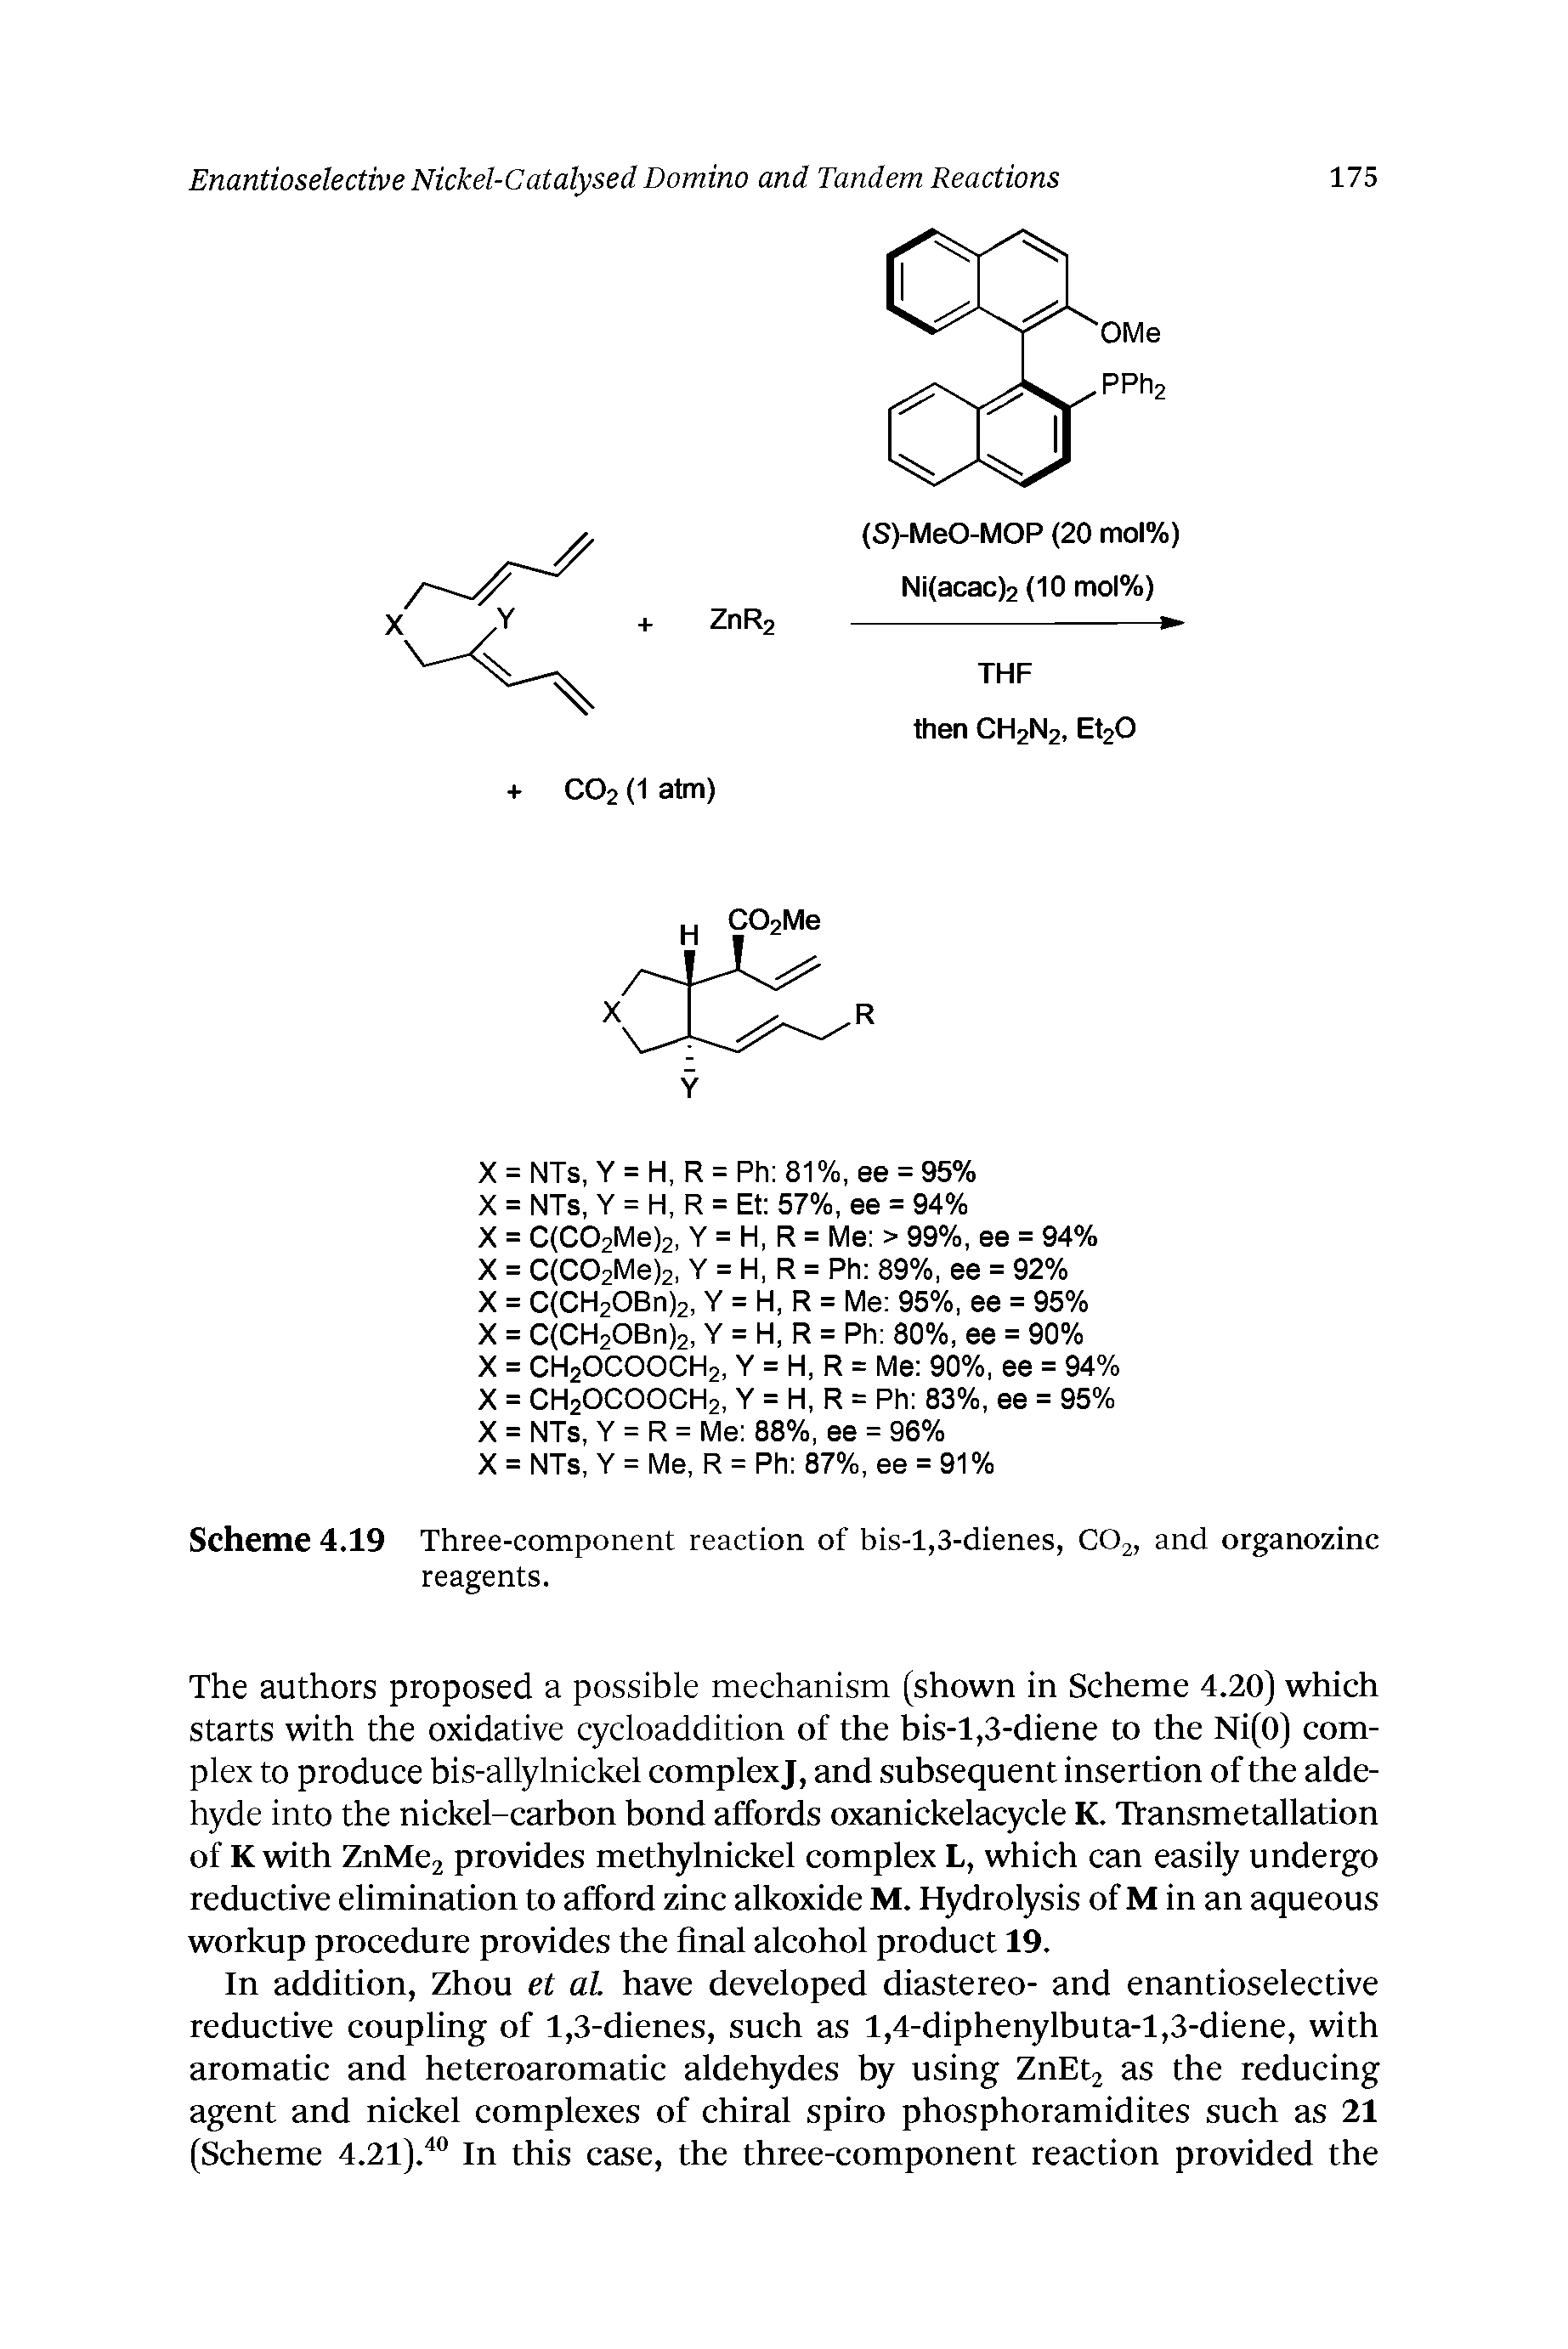 Scheme 4.19 Three-component reaction of bis-1,3-dienes, CO2, and organozinc reagents.